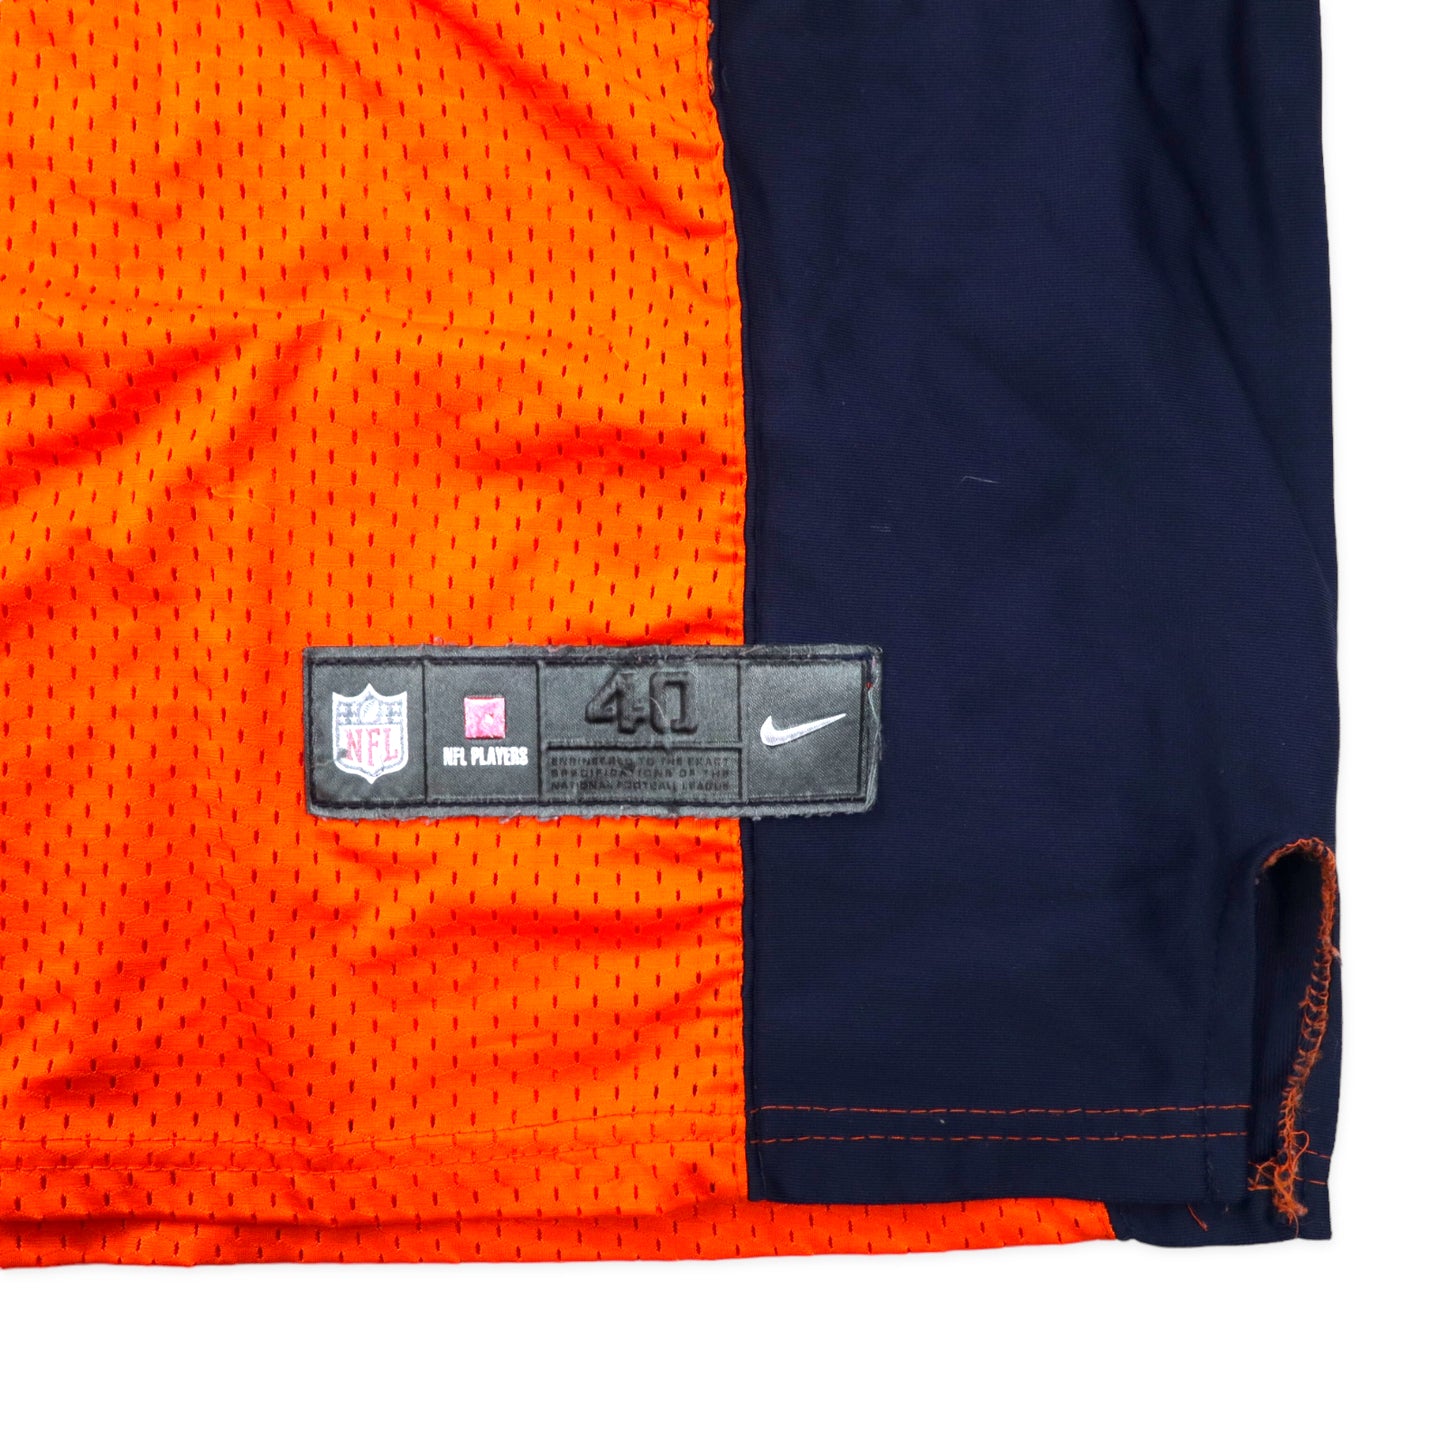 NIKE NFL ゲームシャツ 40 オレンジ ポリエステル BRONCOS ナンバリング MILLER